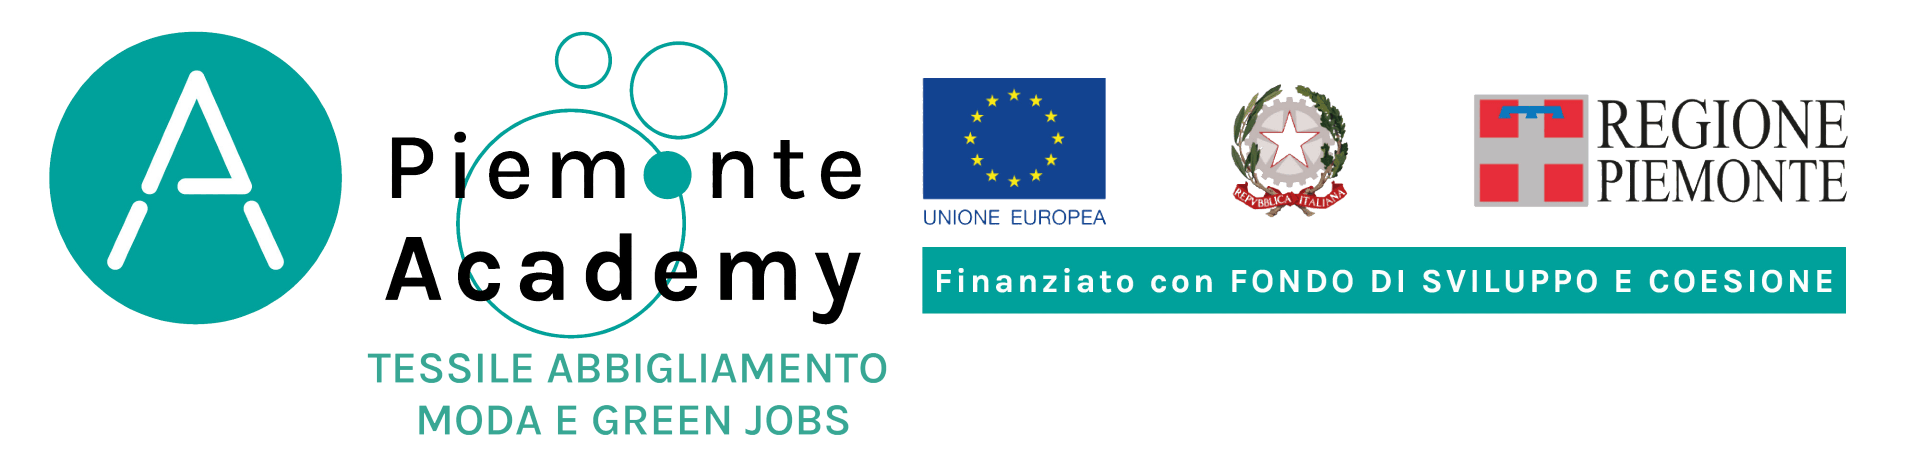 Academy Filiera Piemonte - Corso Addetto Energia e Ambiente